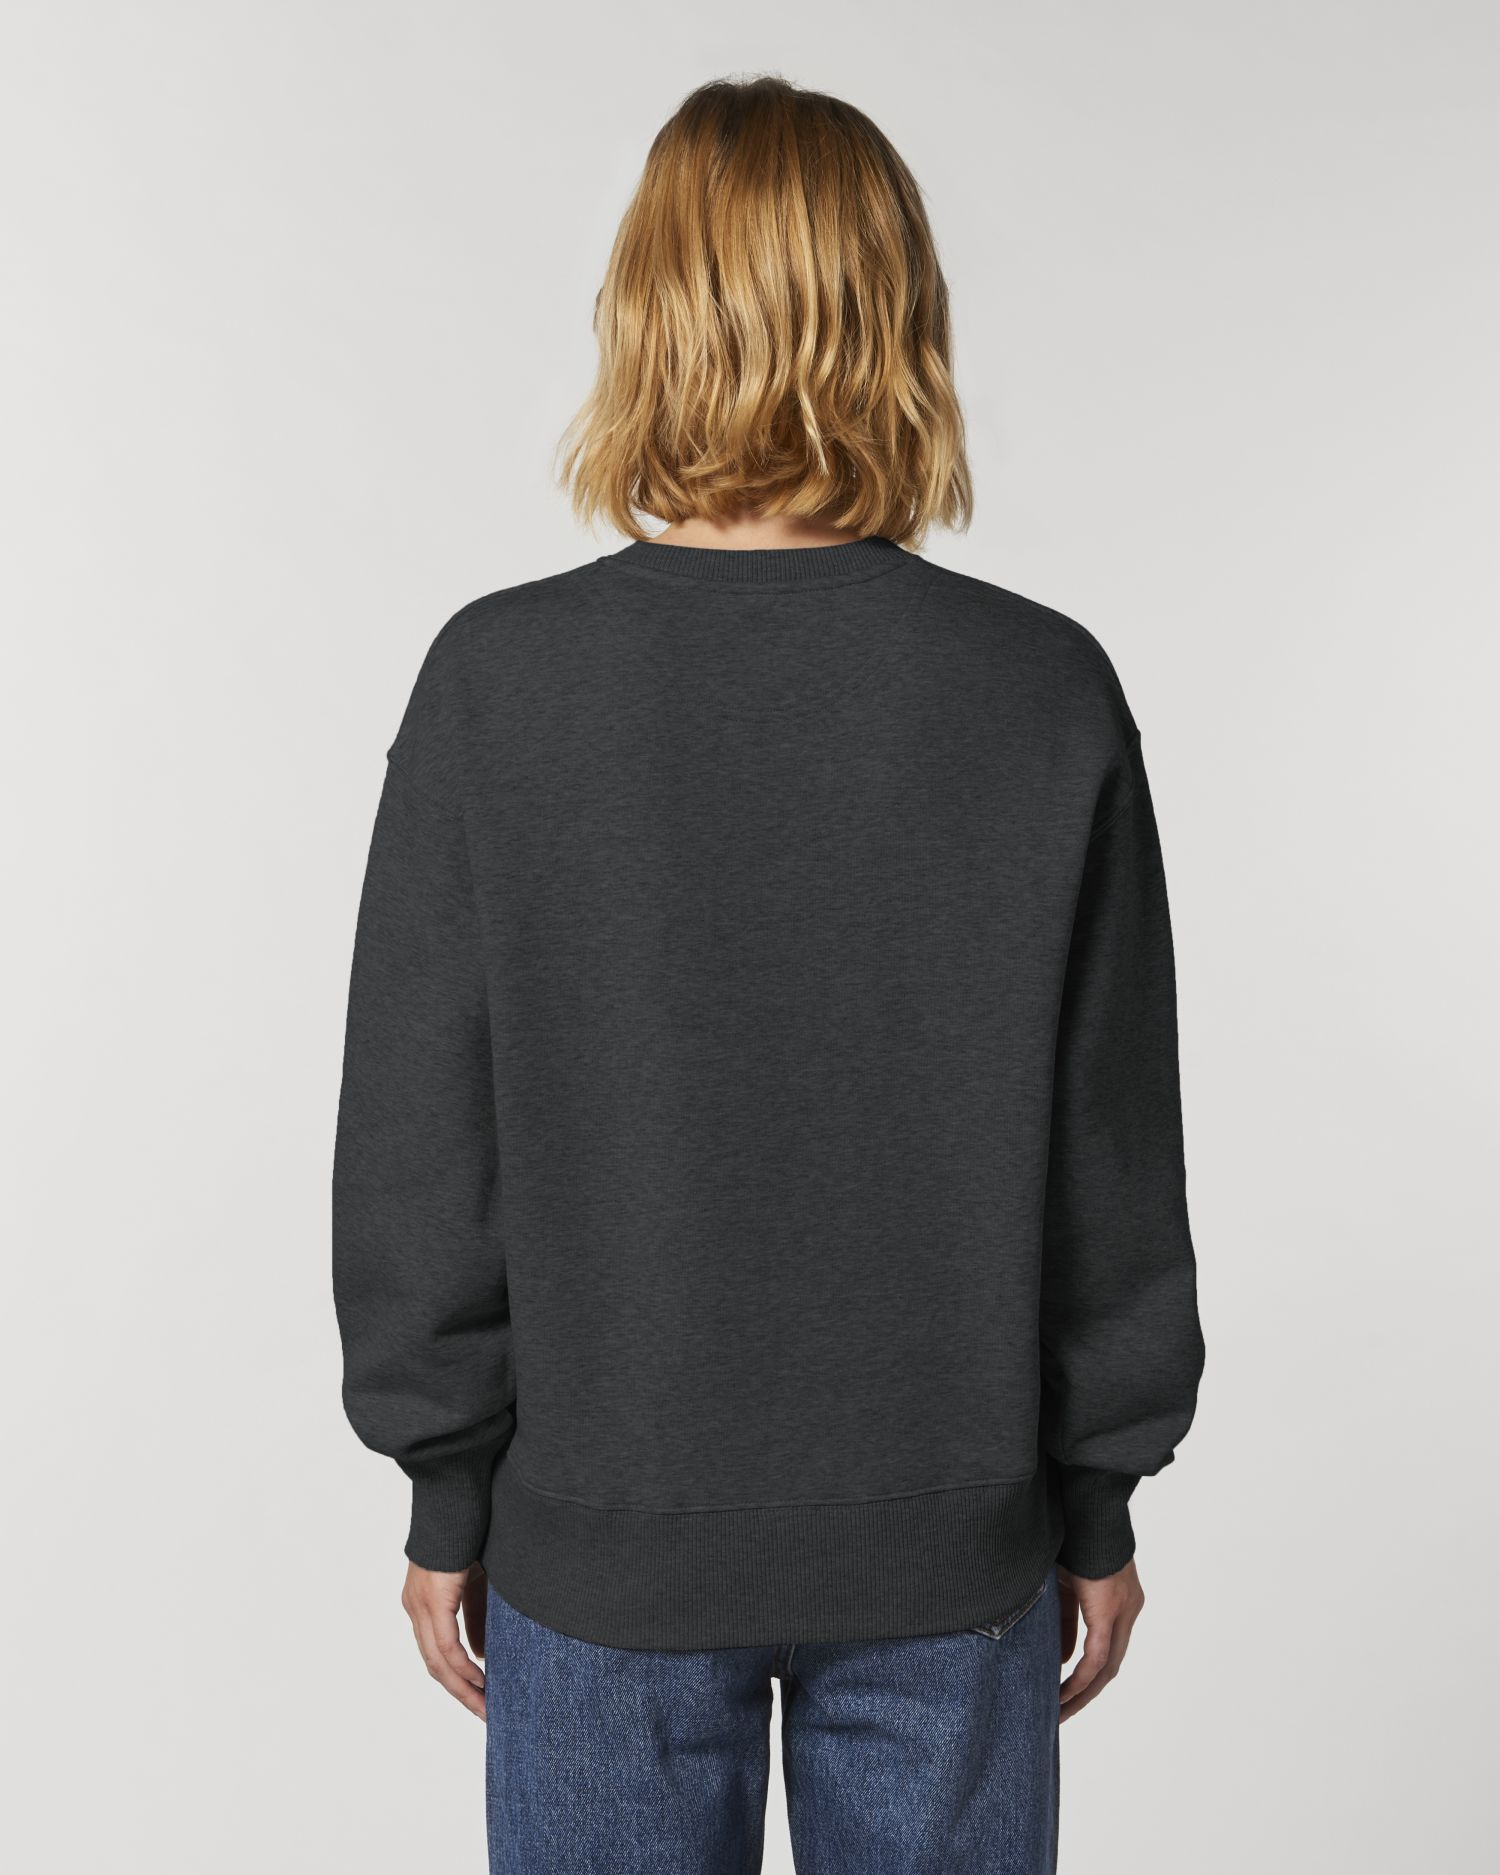 Crew neck sweatshirts Radder in Farbe Dark Heather Grey